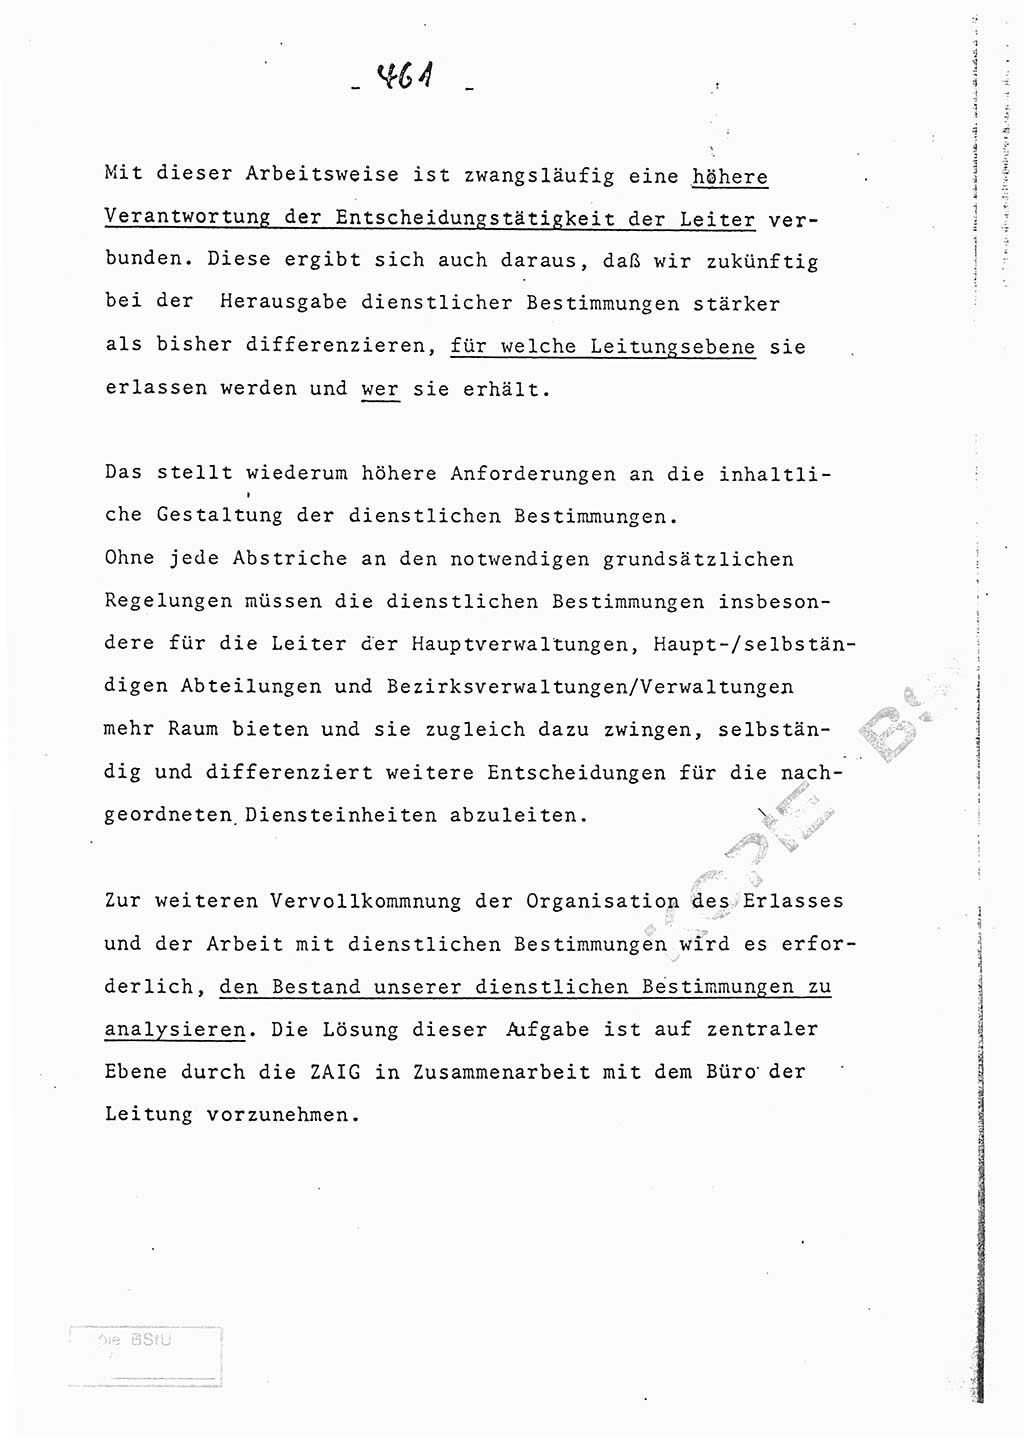 Referat (Entwurf) des Genossen Minister (Generaloberst Erich Mielke) auf der Dienstkonferenz 1972, Ministerium für Staatssicherheit (MfS) [Deutsche Demokratische Republik (DDR)], Der Minister, Geheime Verschlußsache (GVS) 008-150/72, Berlin 25.2.1972, Seite 461 (Ref. Entw. DK MfS DDR Min. GVS 008-150/72 1972, S. 461)